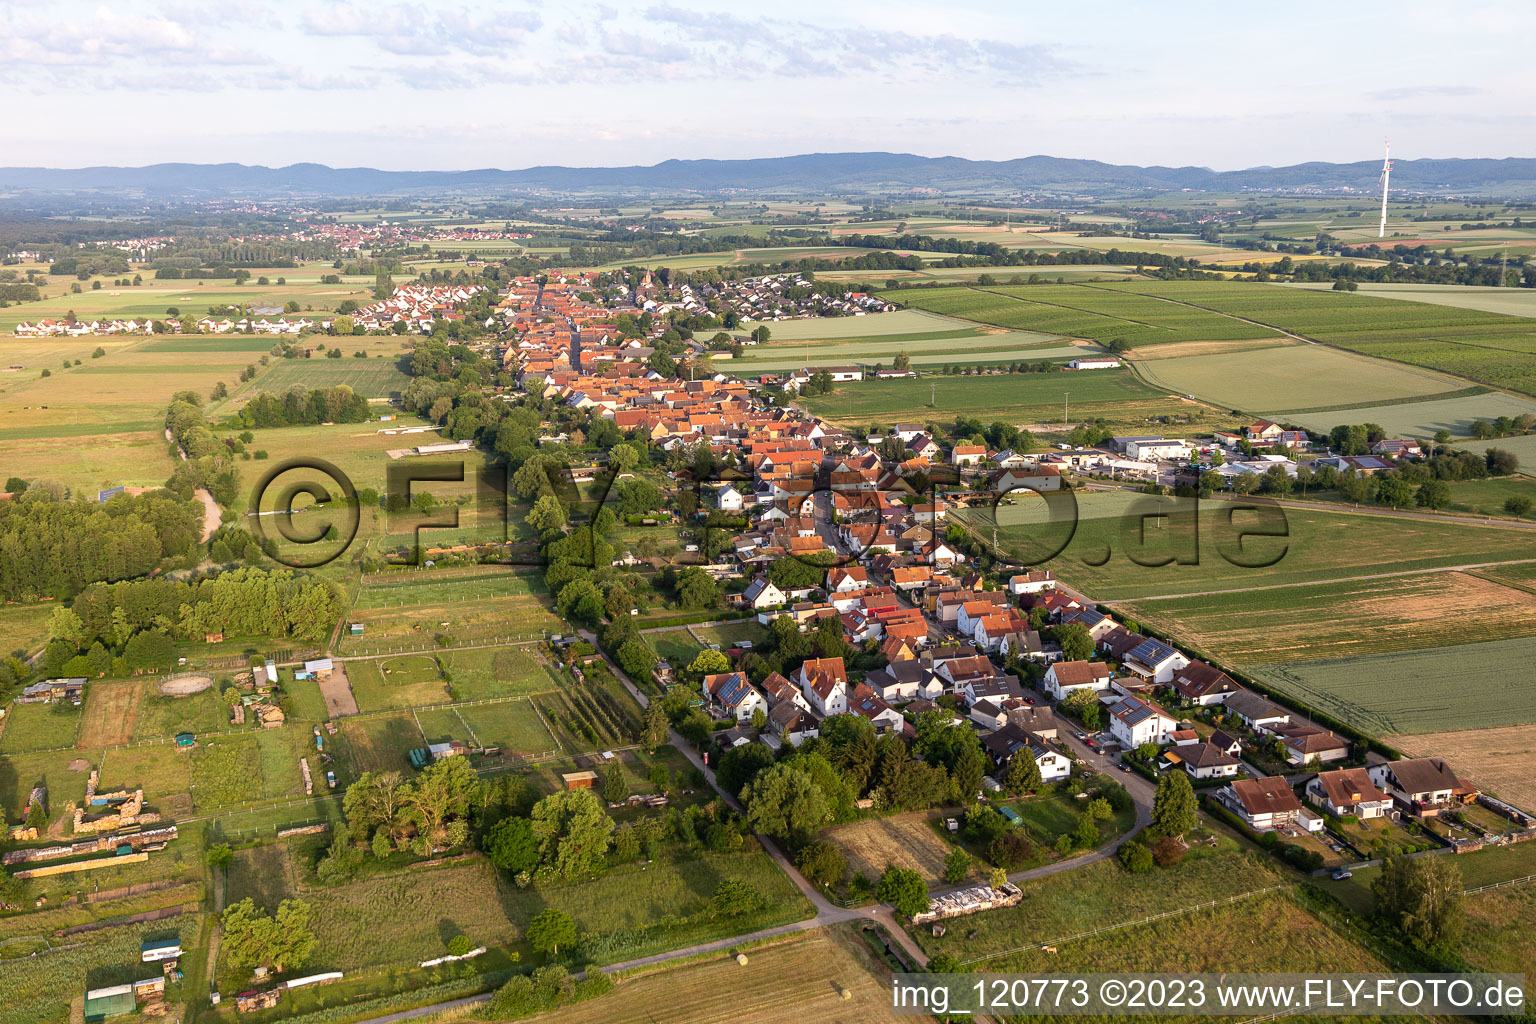 Luftbild von Dorf - Ansicht am Rande von landwirtschaftlichen Feldern und Nutzflächen in Freckenfeld im Bundesland Rheinland-Pfalz, Deutschland